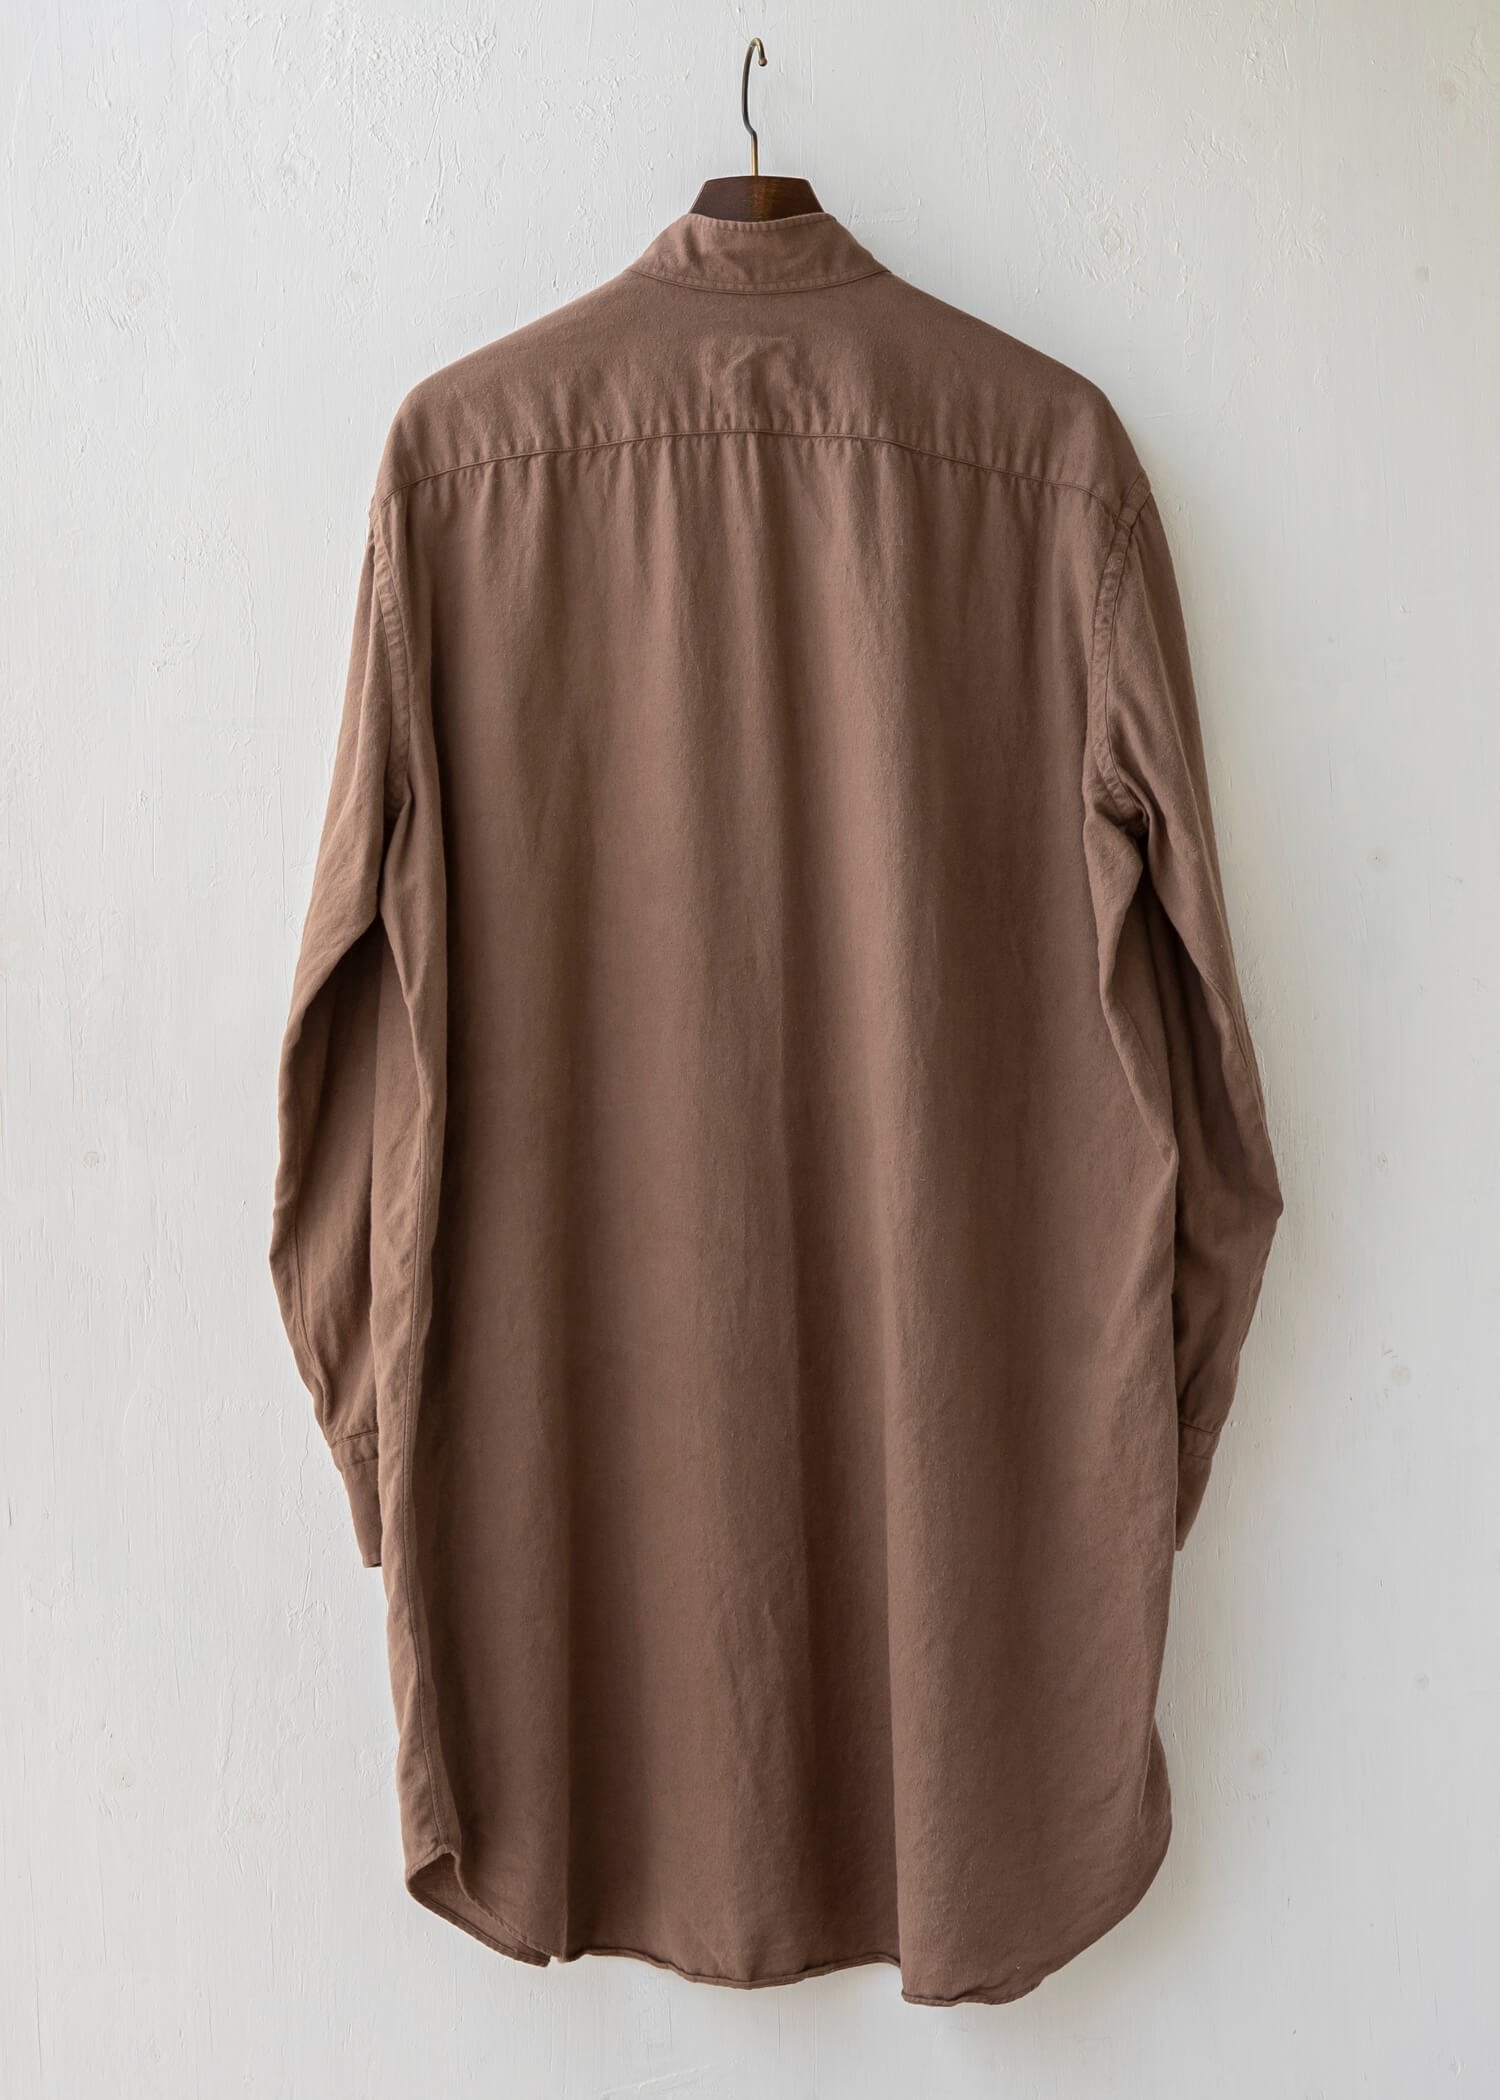 ZIIIN ZIIIN / "ANGO" 硫化染  Brushed cotton Long shirt / RENGA